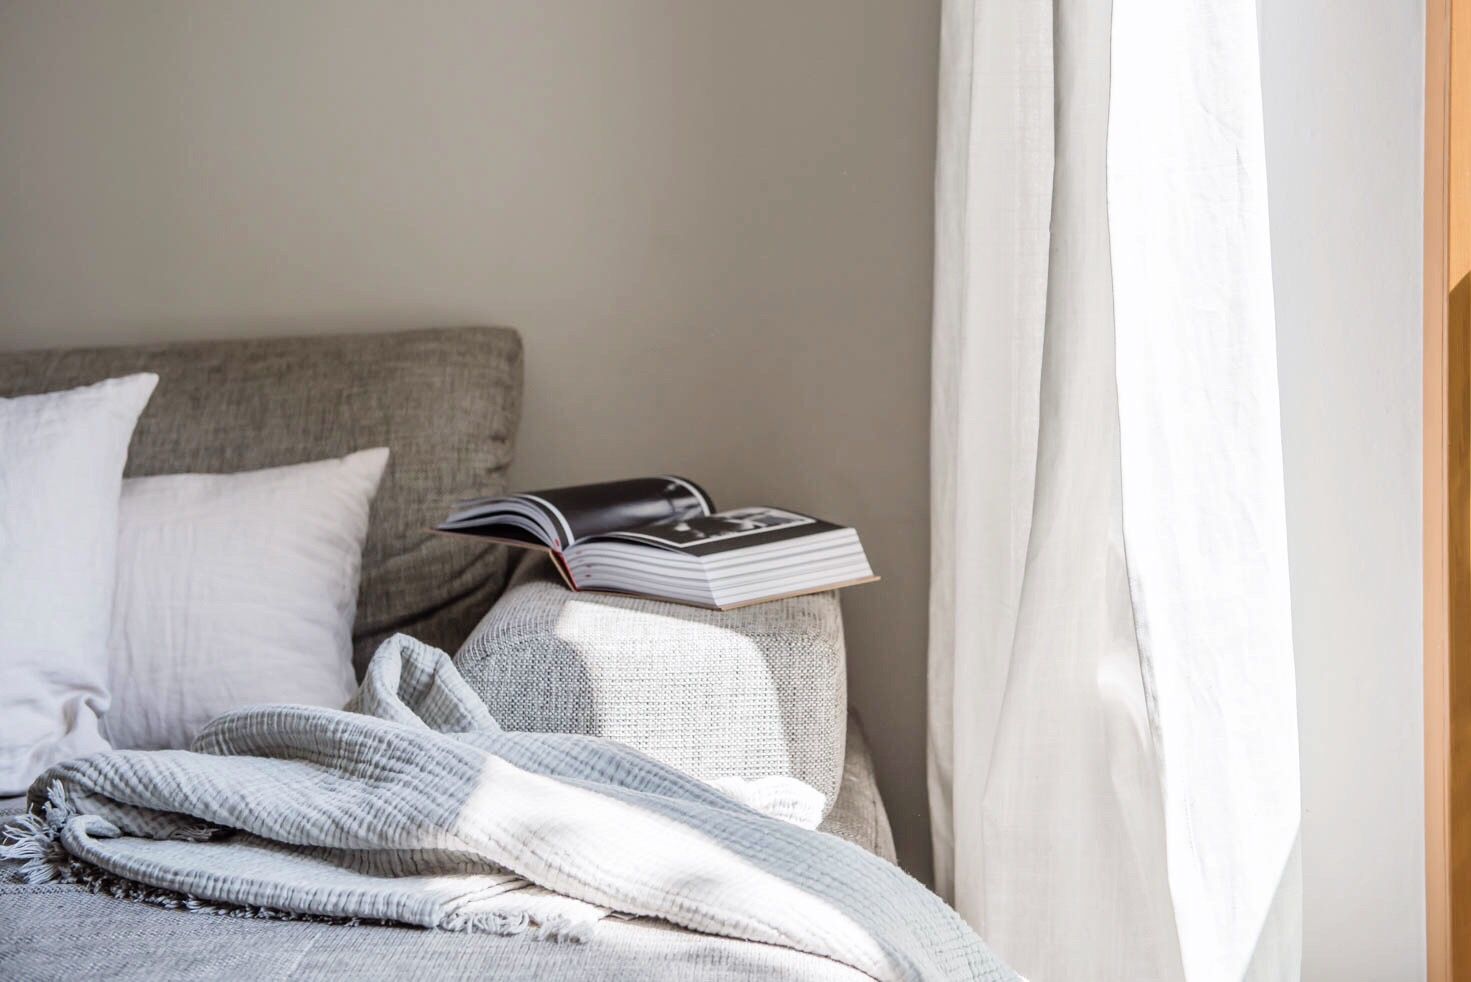 Bild einer Couch mit Kissen, Decke und einem aufgeschlagenen Buch am Rand. Die Couch steht neben einem weißen Vorhang